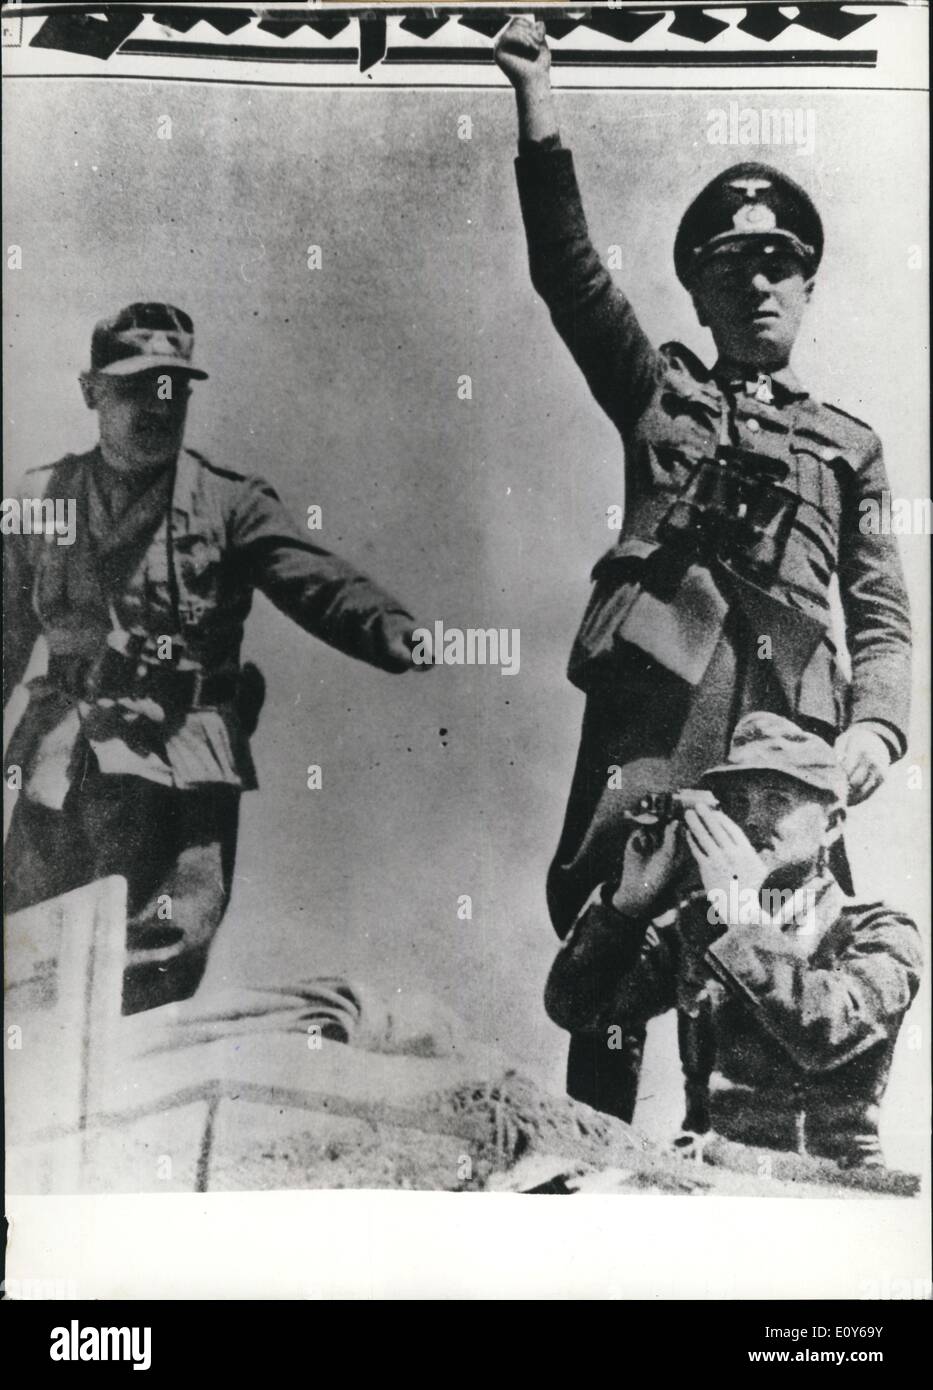 Le 12 décembre 1968 - Domaine général maréchal Erwin Rommel, chef de l'Afrikacorps in World War 2. L'Allemagne Gagnant du Concours de beauté photo Kodak Banque D'Images